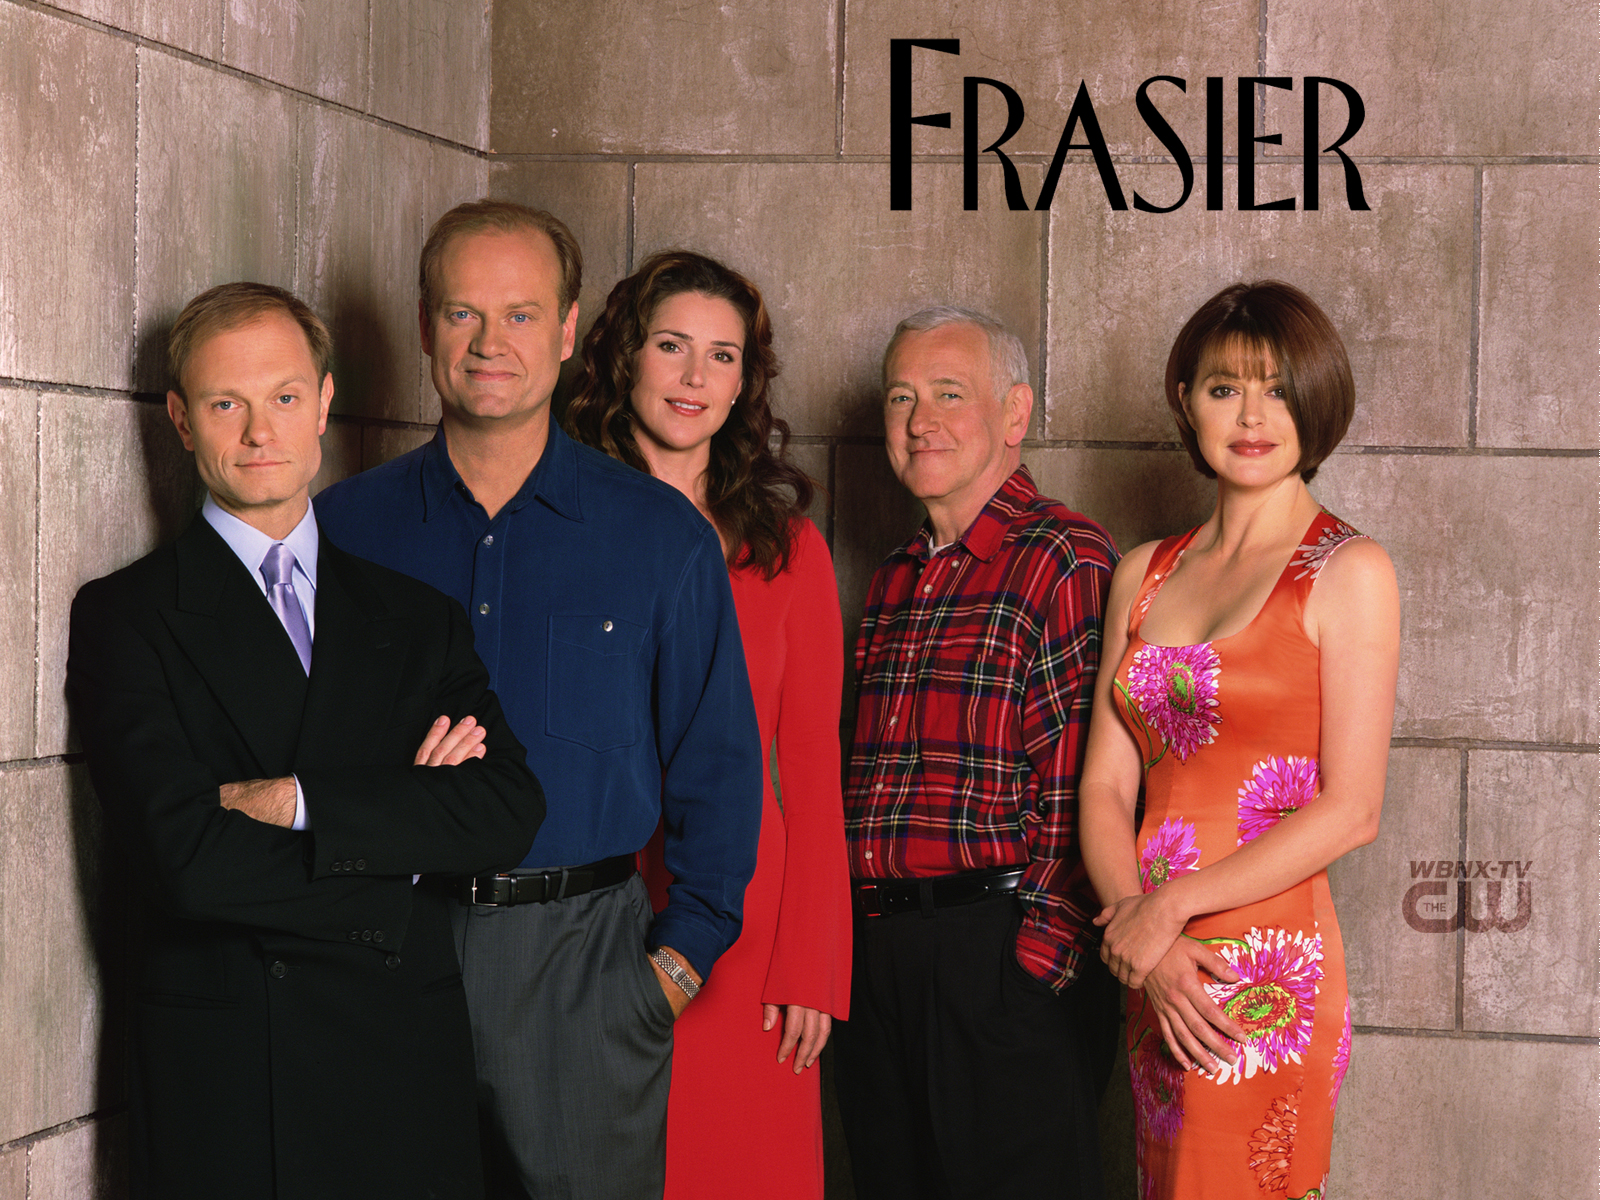 Frasier Theme Song. Movie Theme Songs & TV Soundtracks